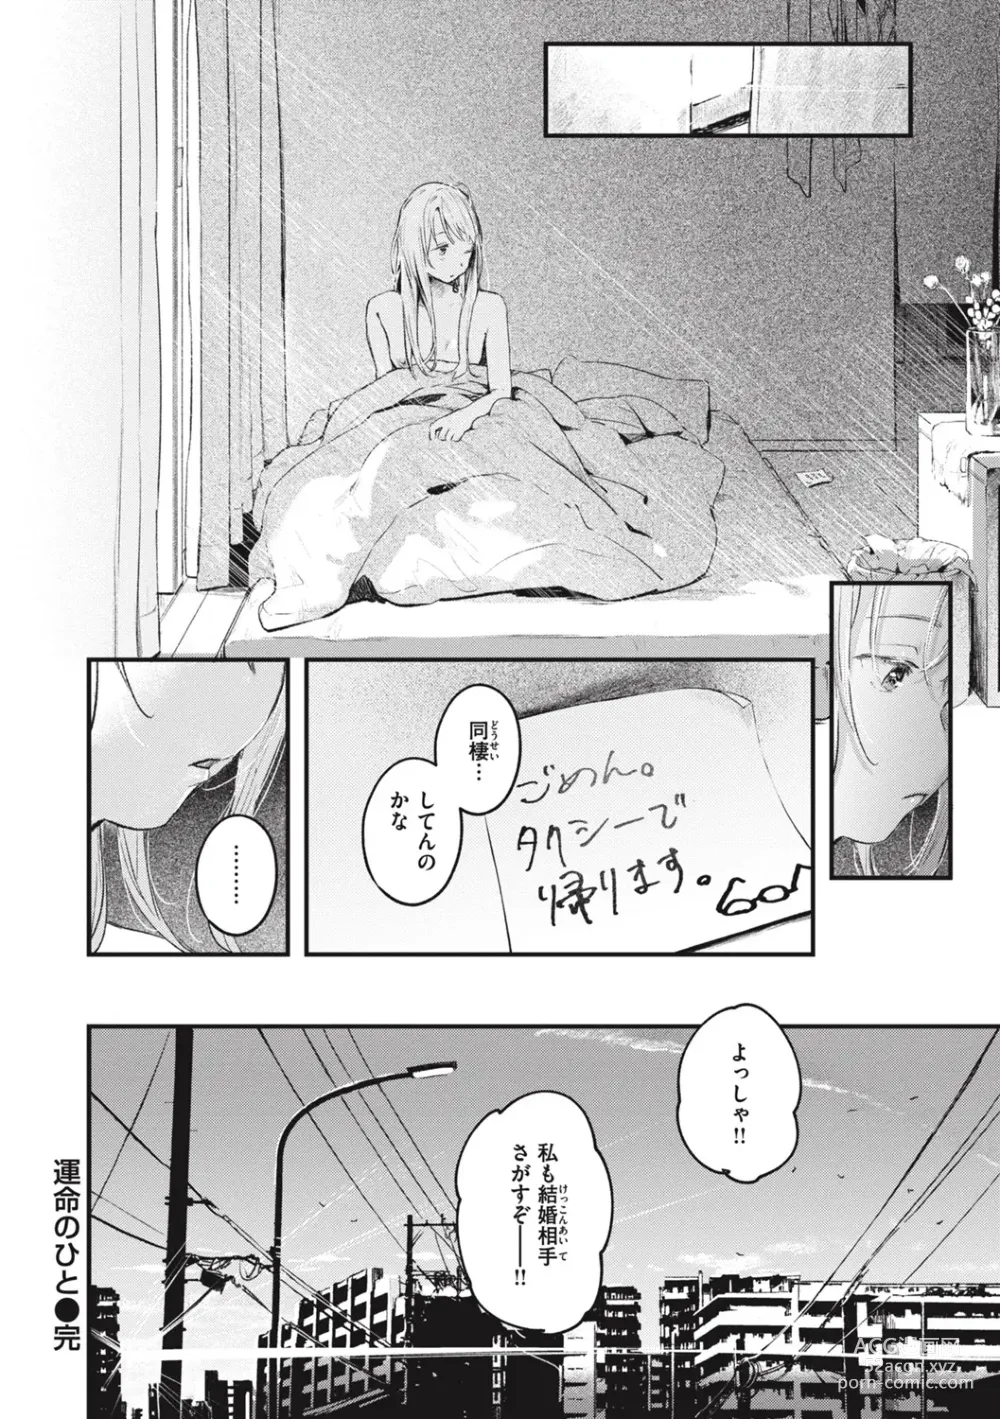 Page 204 of manga Koi no Mukidashi